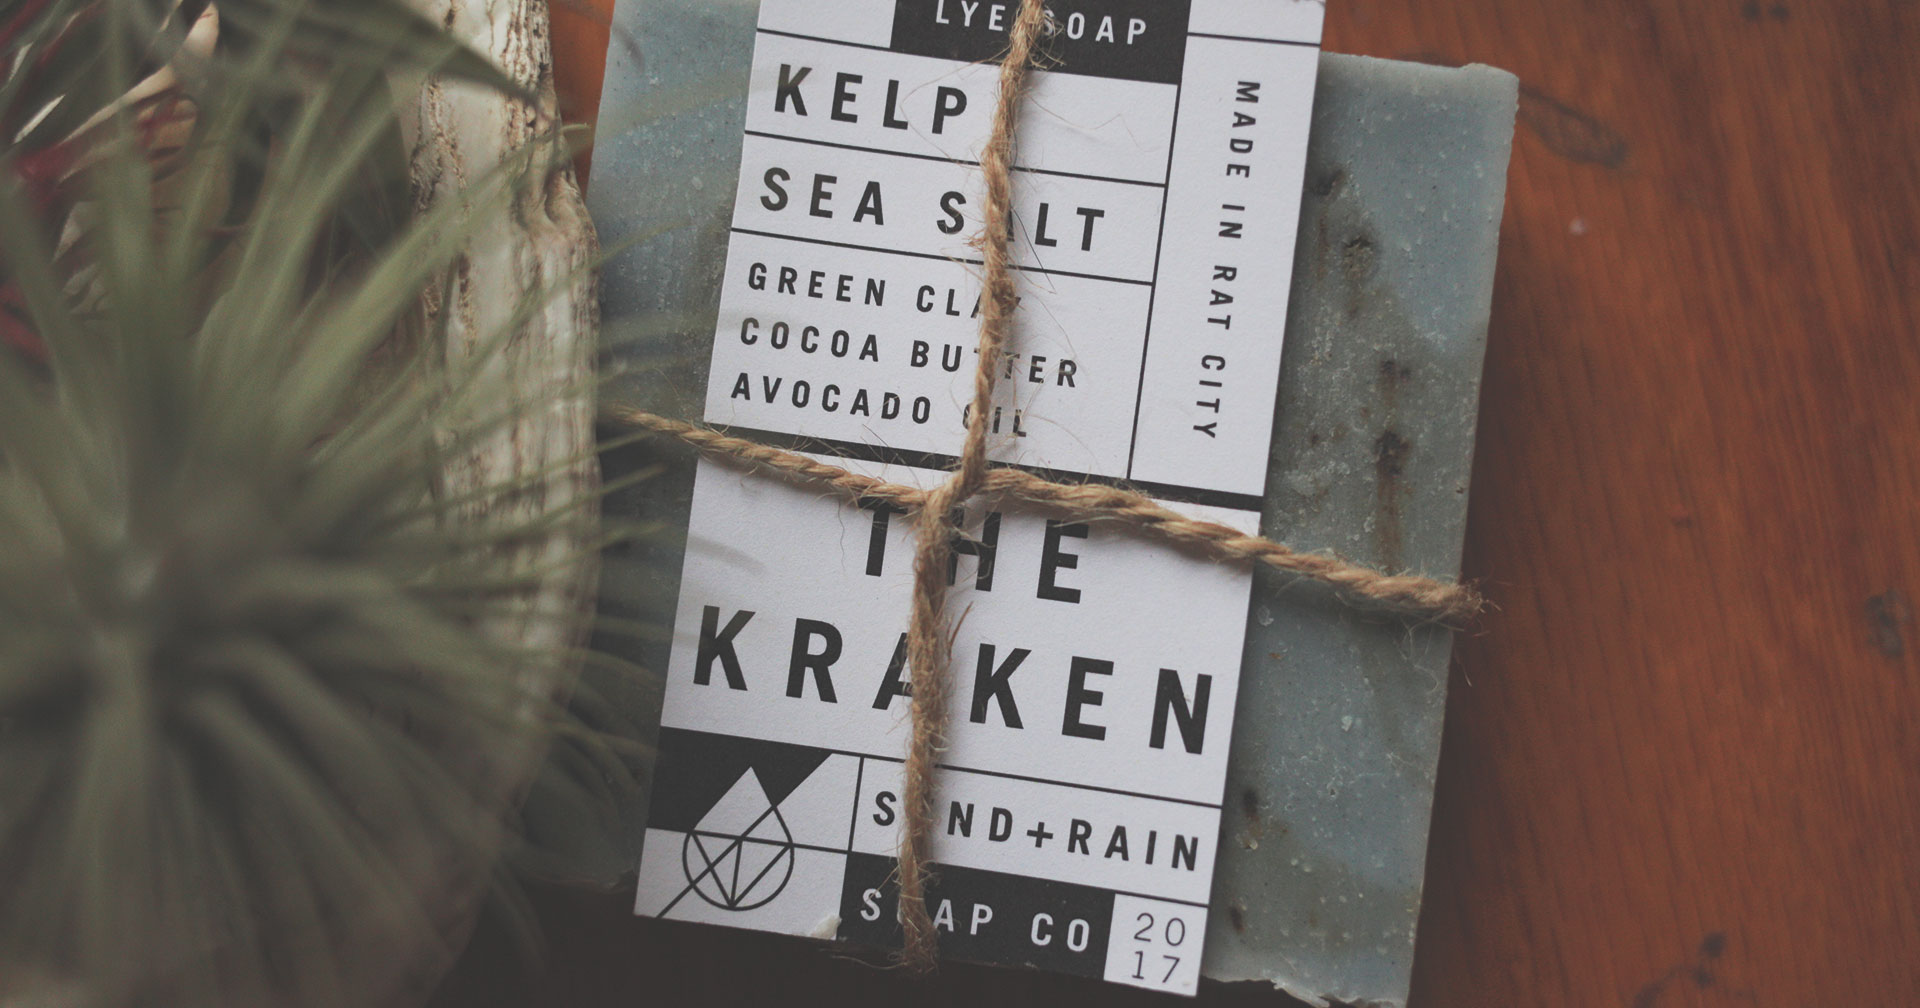 Send Rain soap company kraken label mockup